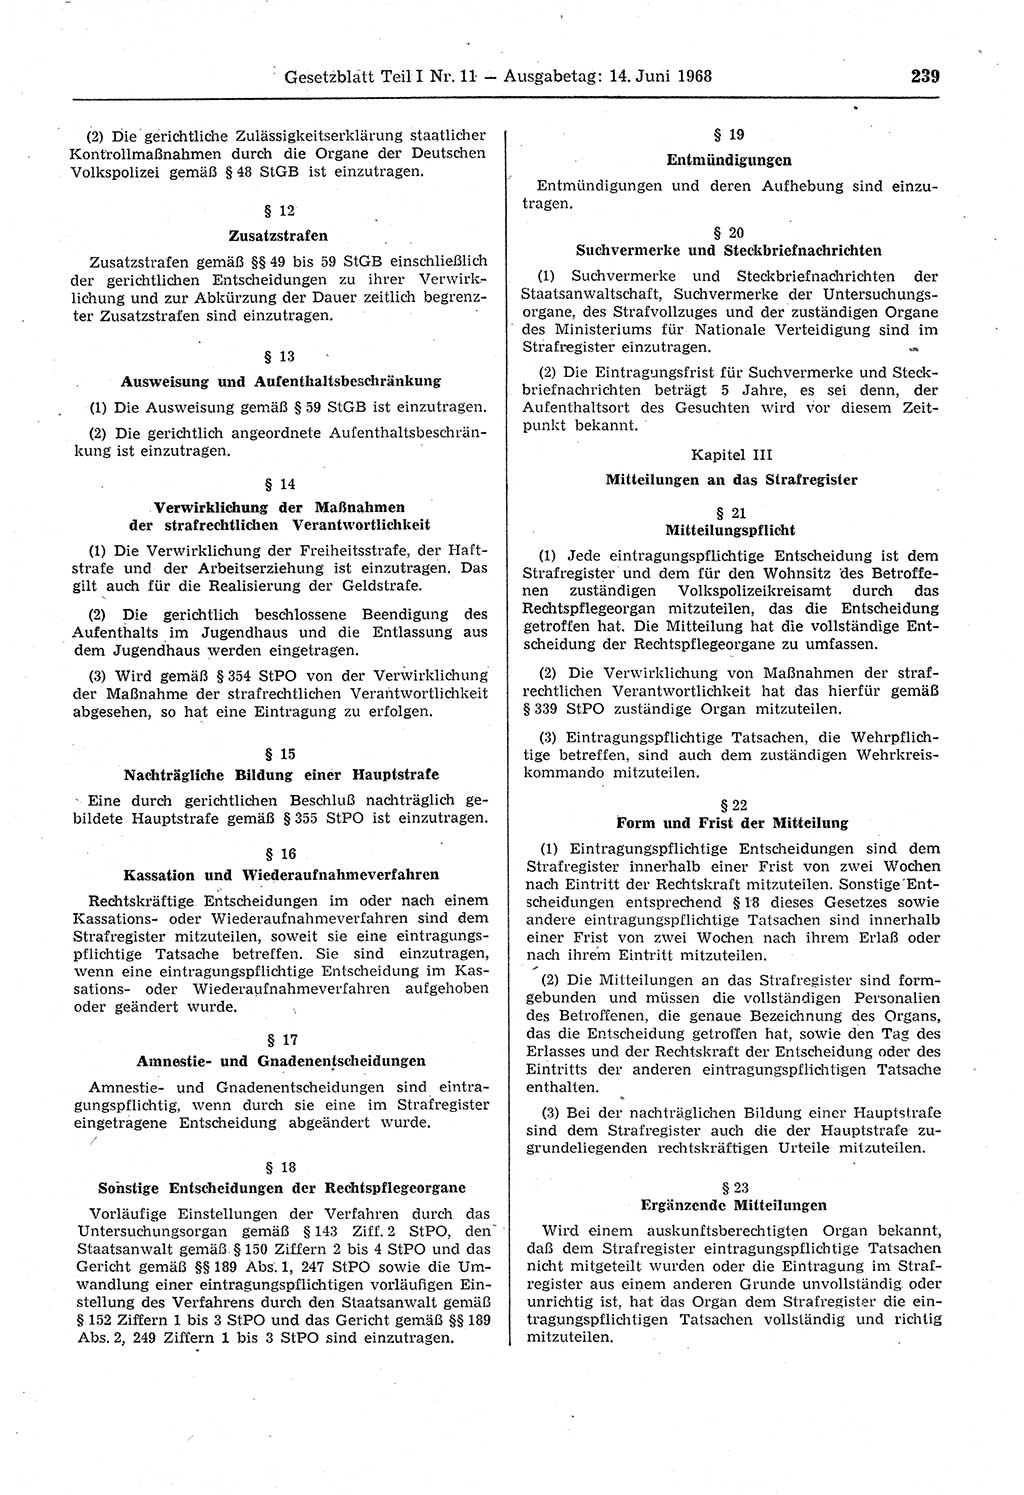 Gesetzblatt (GBl.) der Deutschen Demokratischen Republik (DDR) Teil Ⅰ 1968, Seite 239 (GBl. DDR Ⅰ 1968, S. 239)